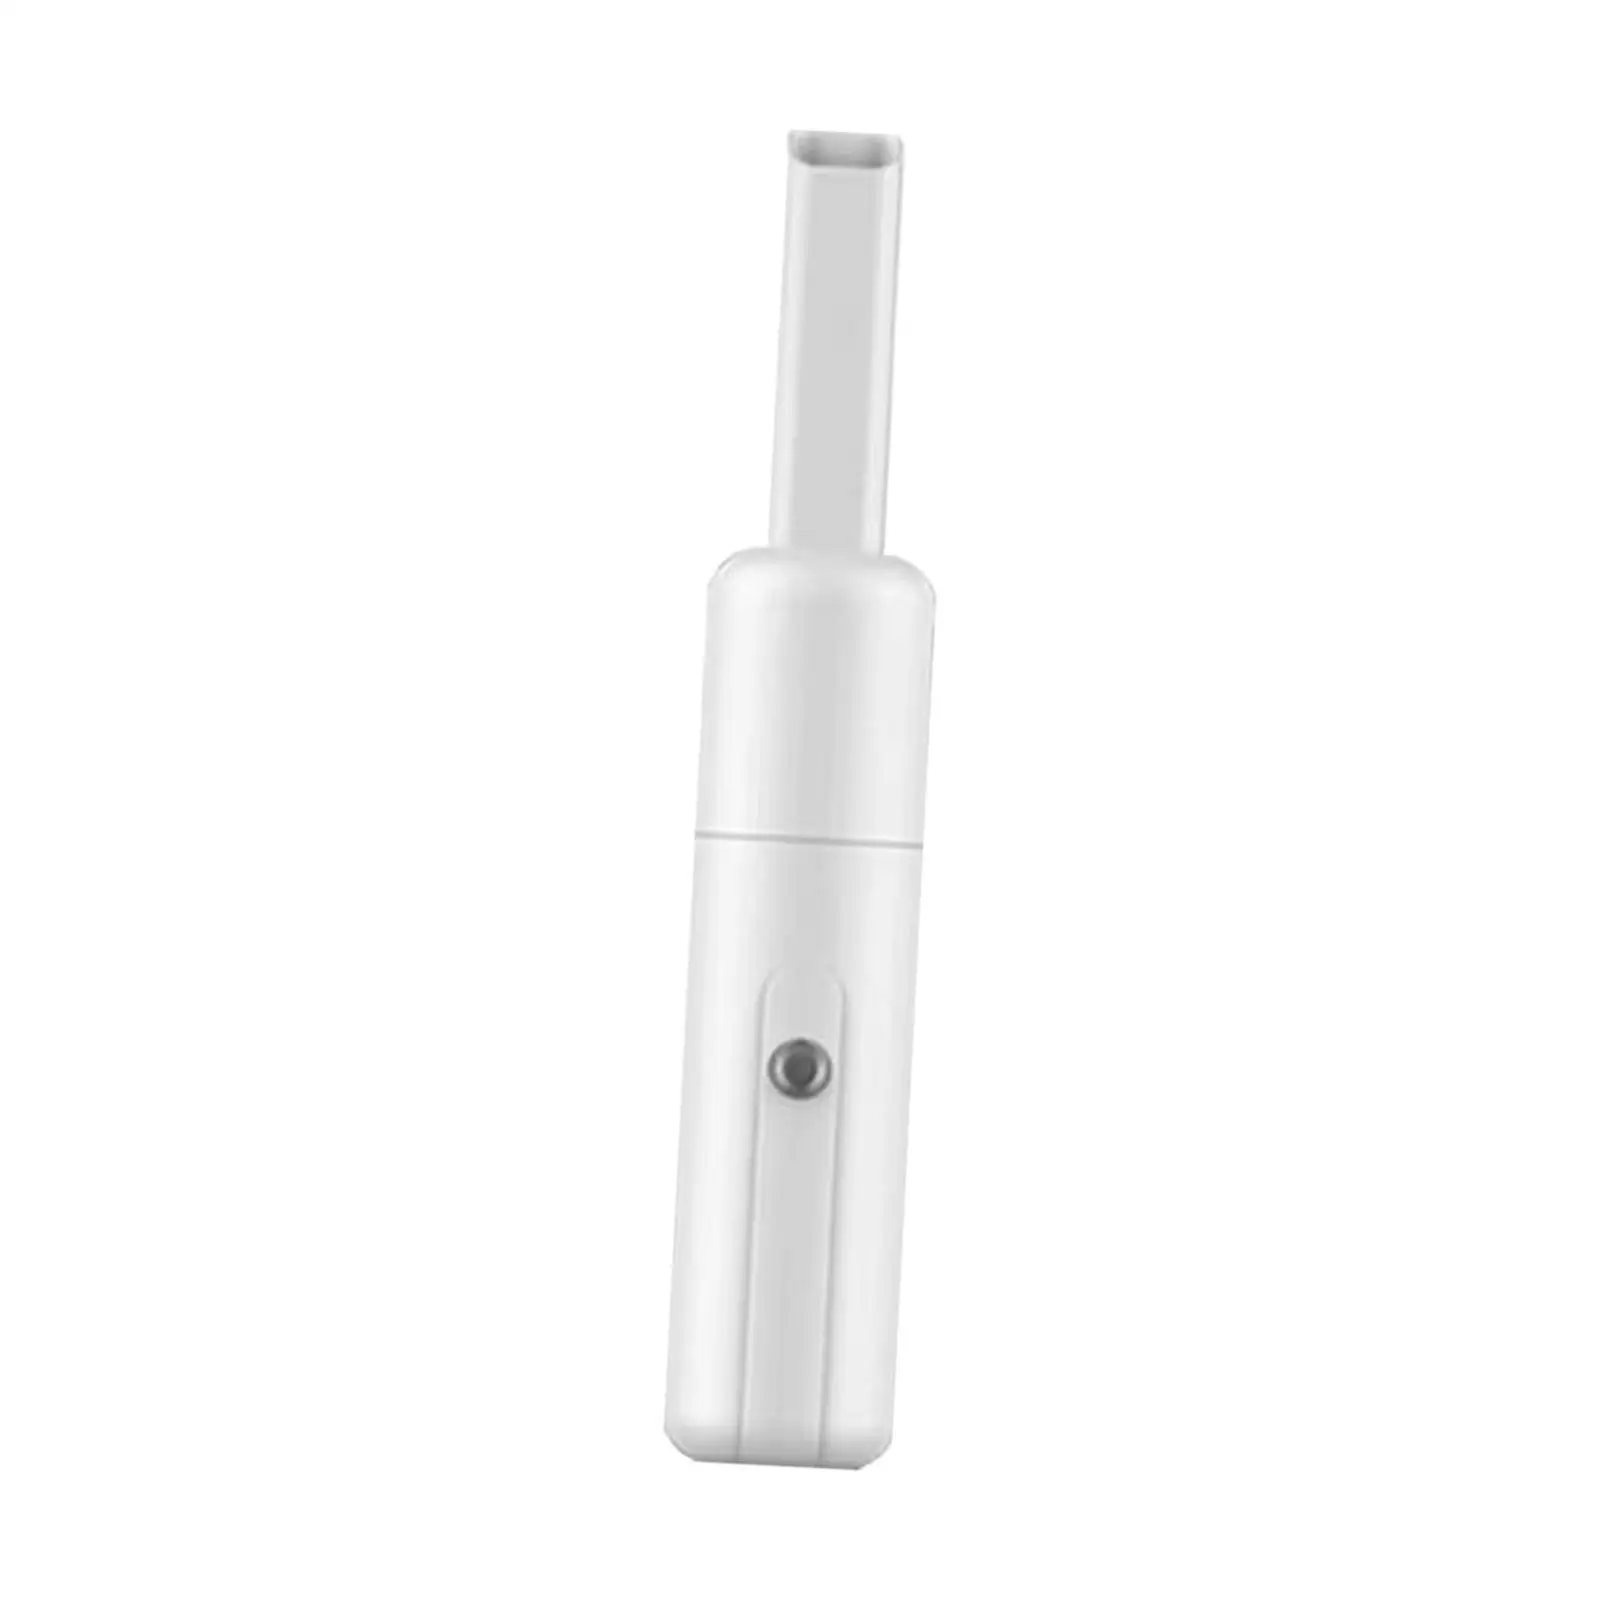 Handheld Car Vacuum Cleaner Dual Use Portable Mini Handheld Duster for Car Home